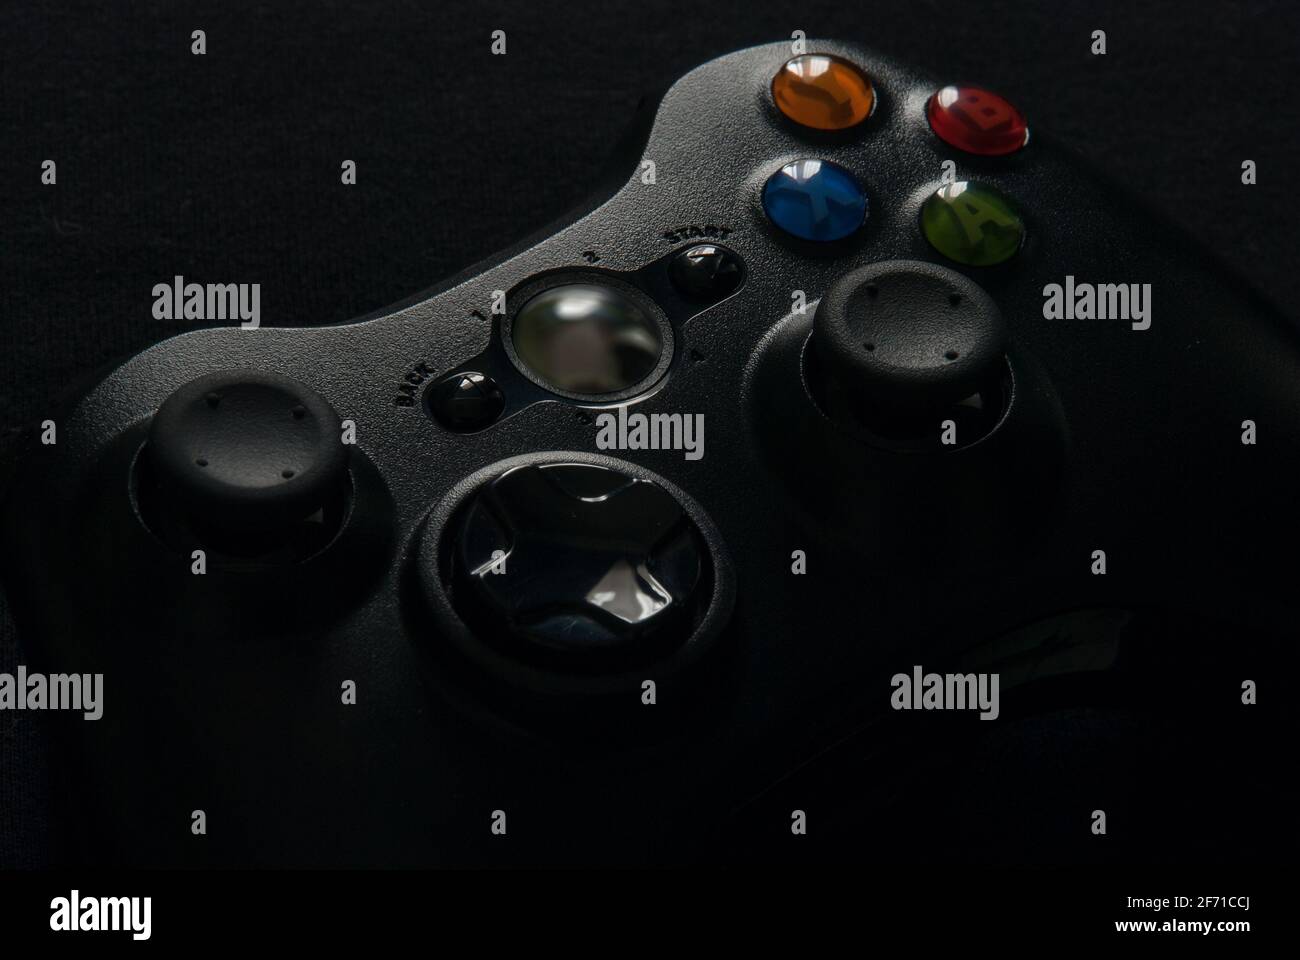 Gamepad on black background - close up studio shot Stock Photo